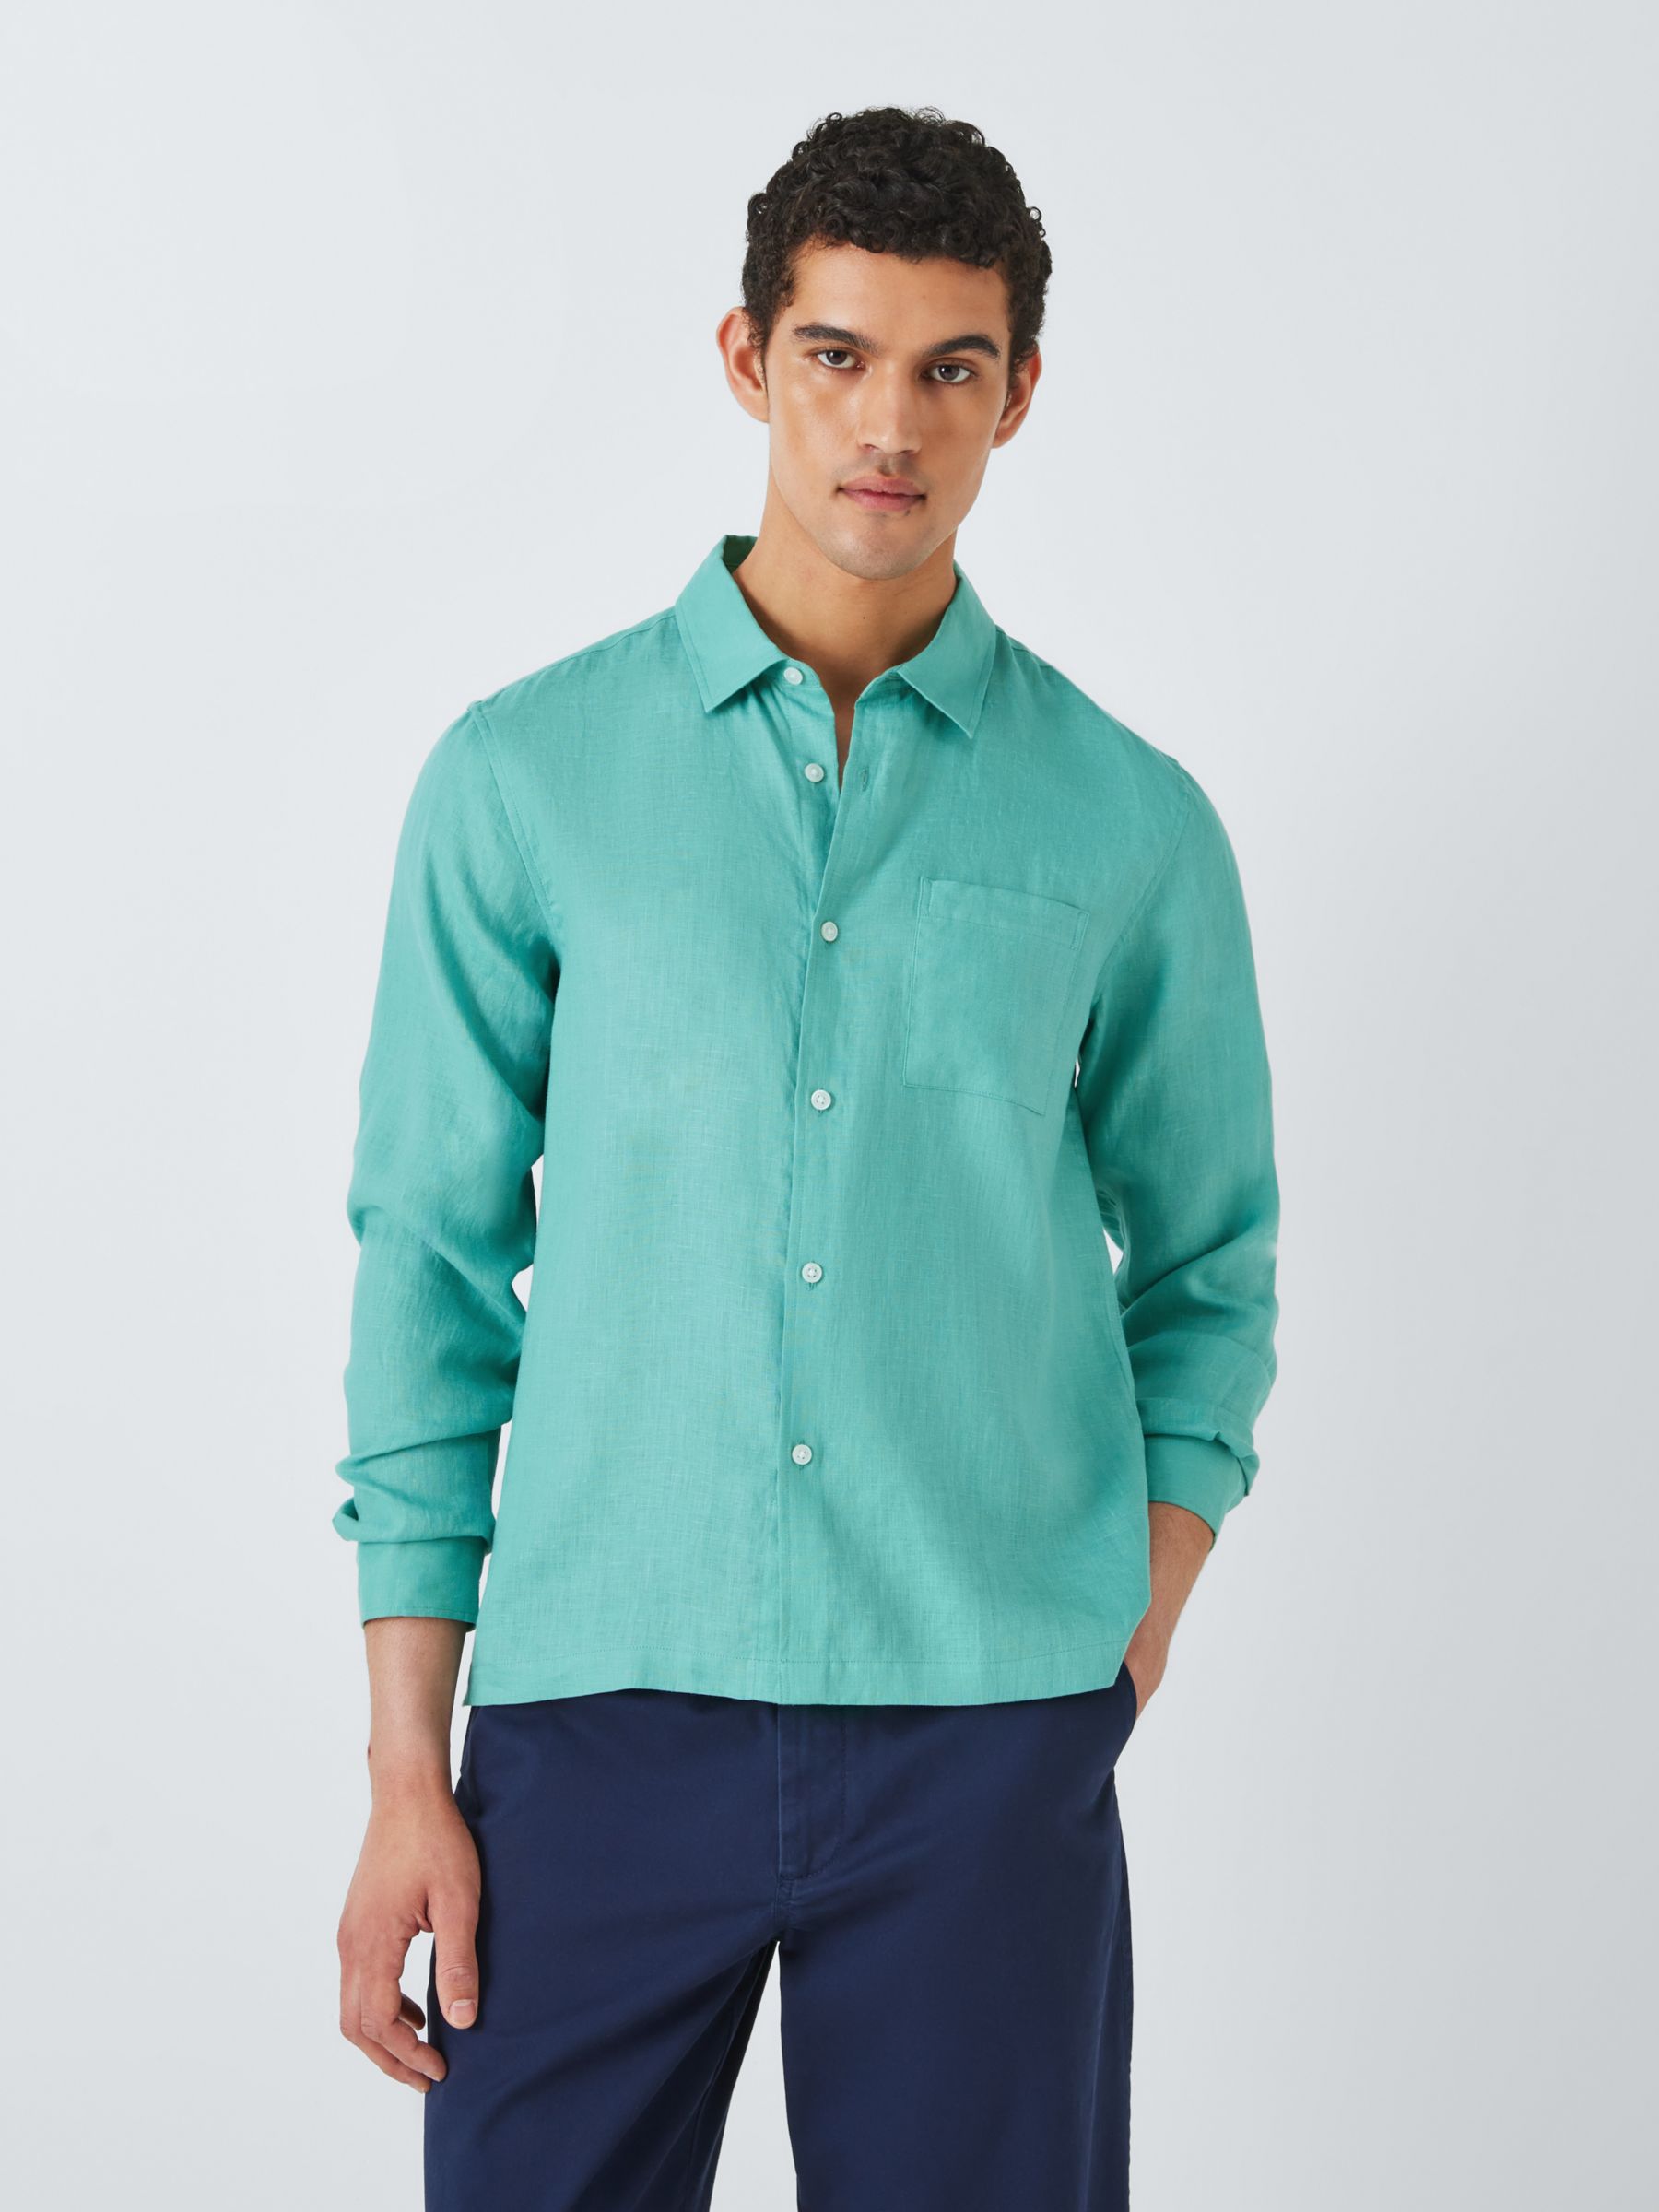 John Lewis Linen Beach Shirt, Green, S